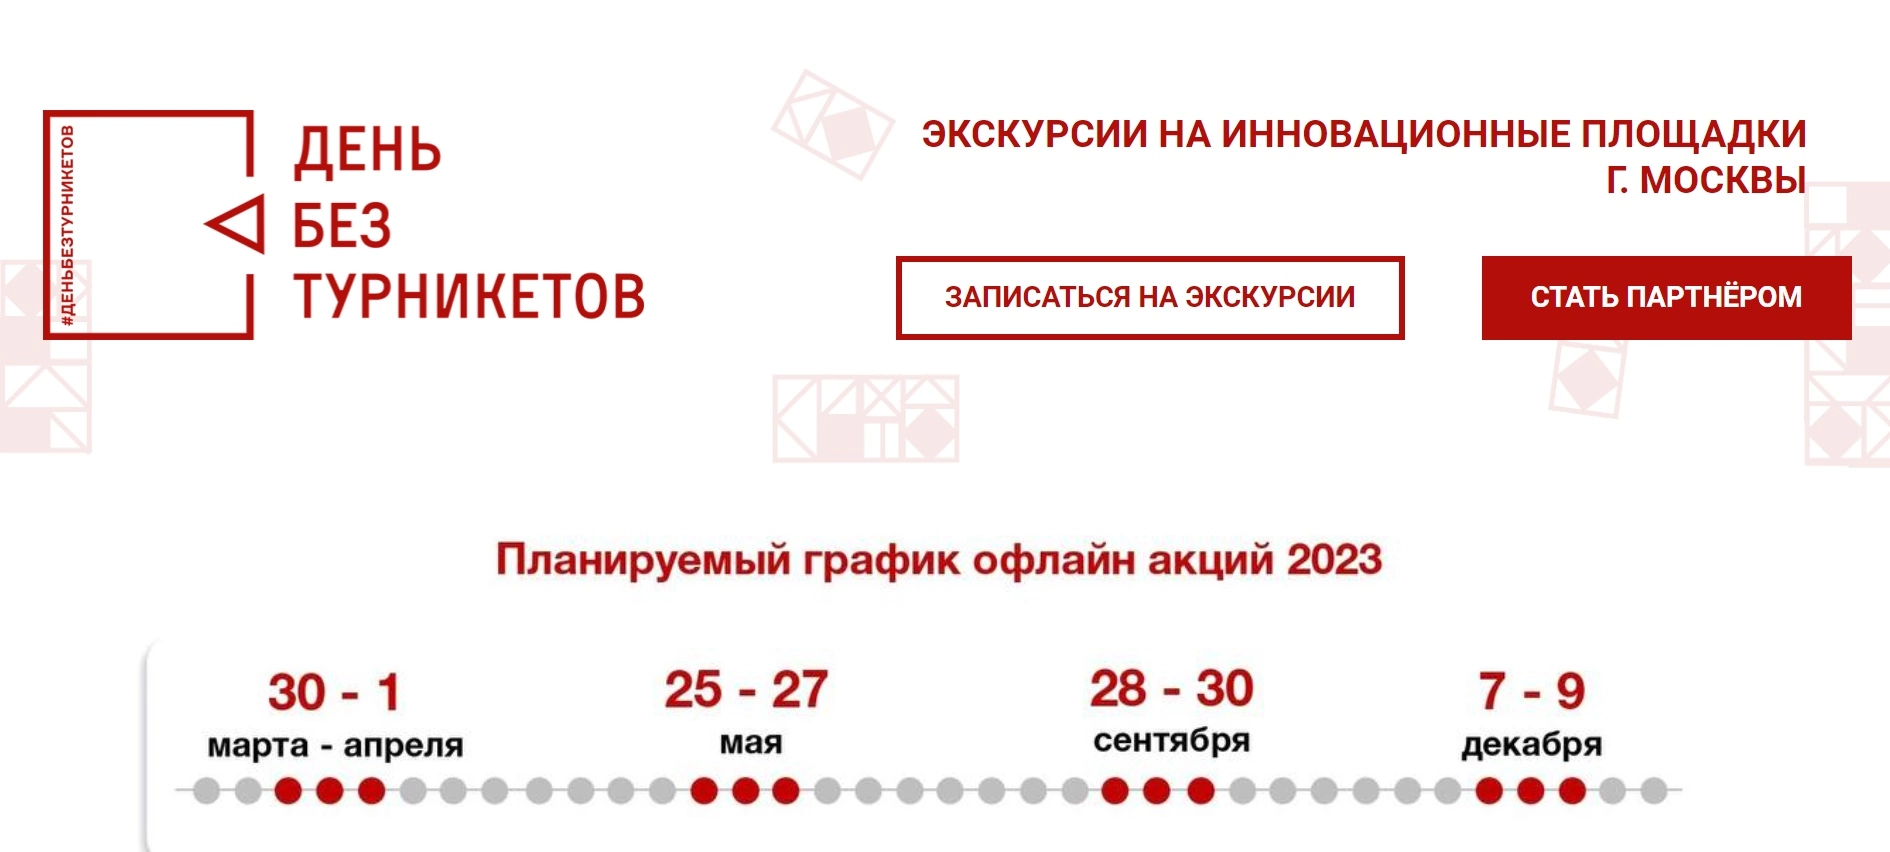 график мероприятий в рамках дня без турникетов в москве в 2023 году